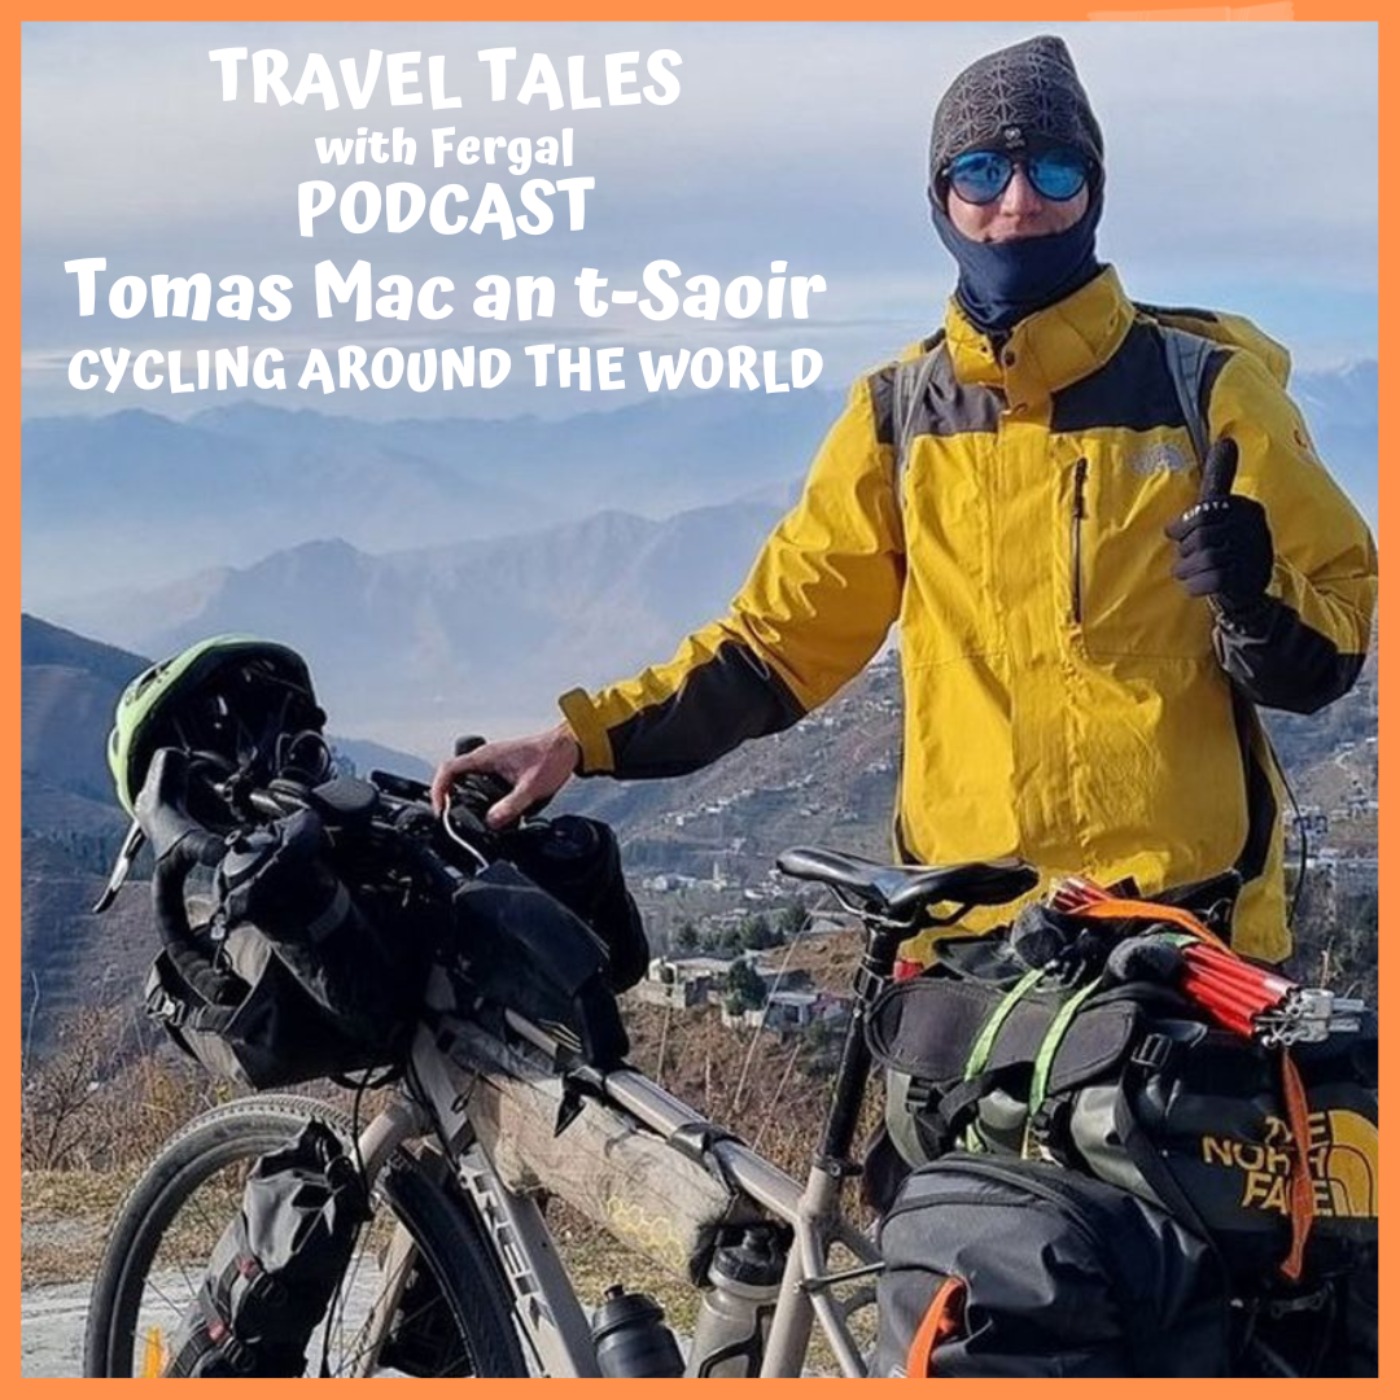 Tomas Mac an t-Saoir Adventurer Cycling the World